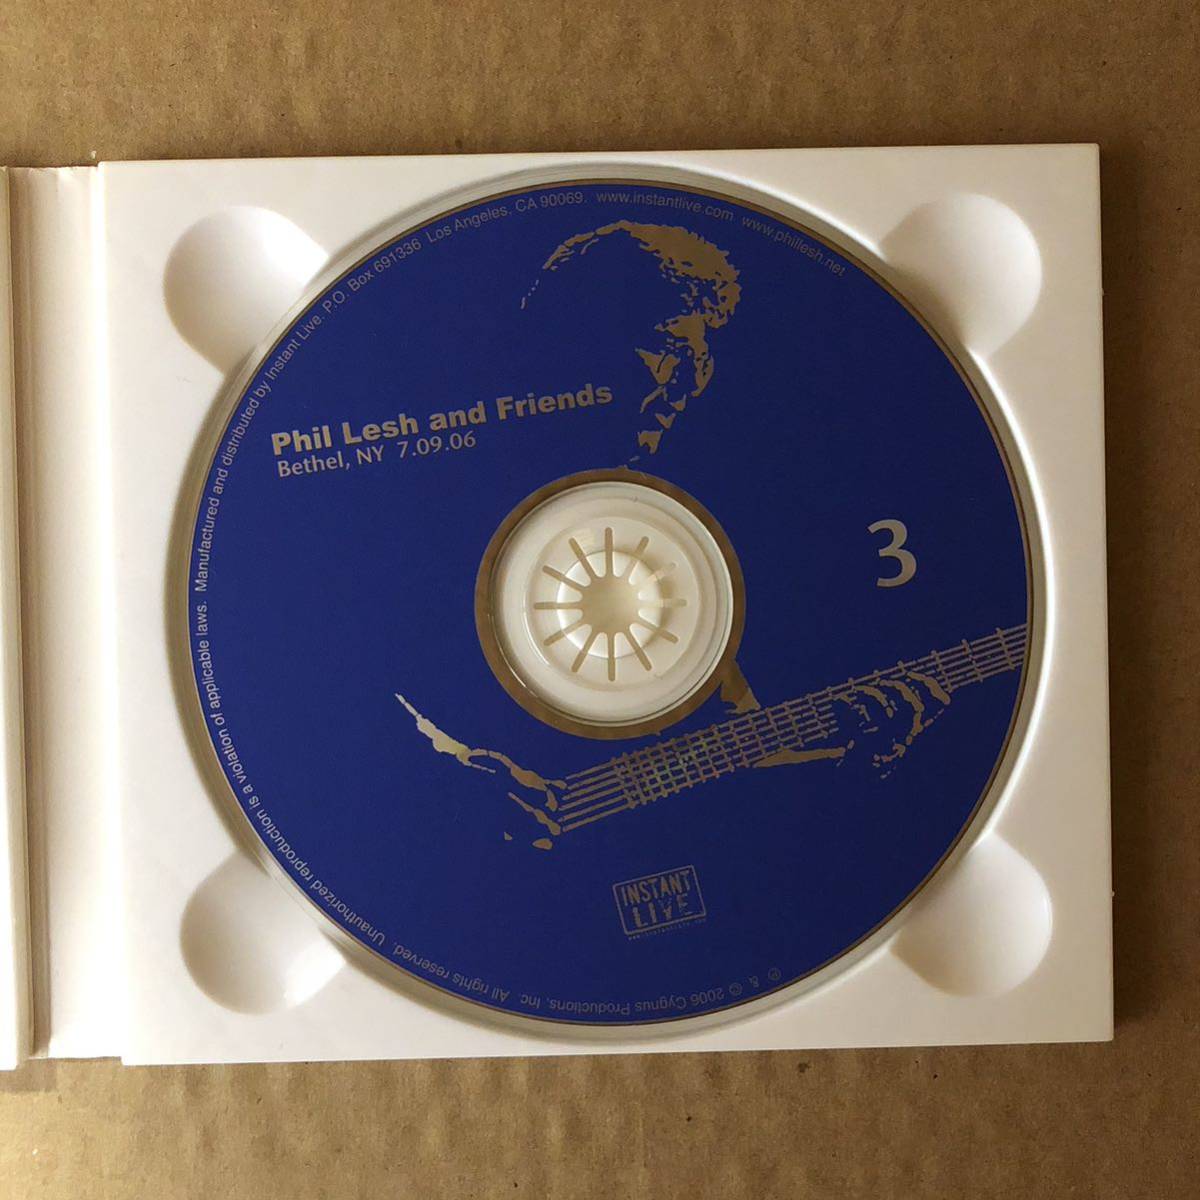 C12 中古CD フィル・レッシュ&フレンズ インスタントライブ instant live Phil Lesh And Friends Bethel, NY 7.09.06_画像5